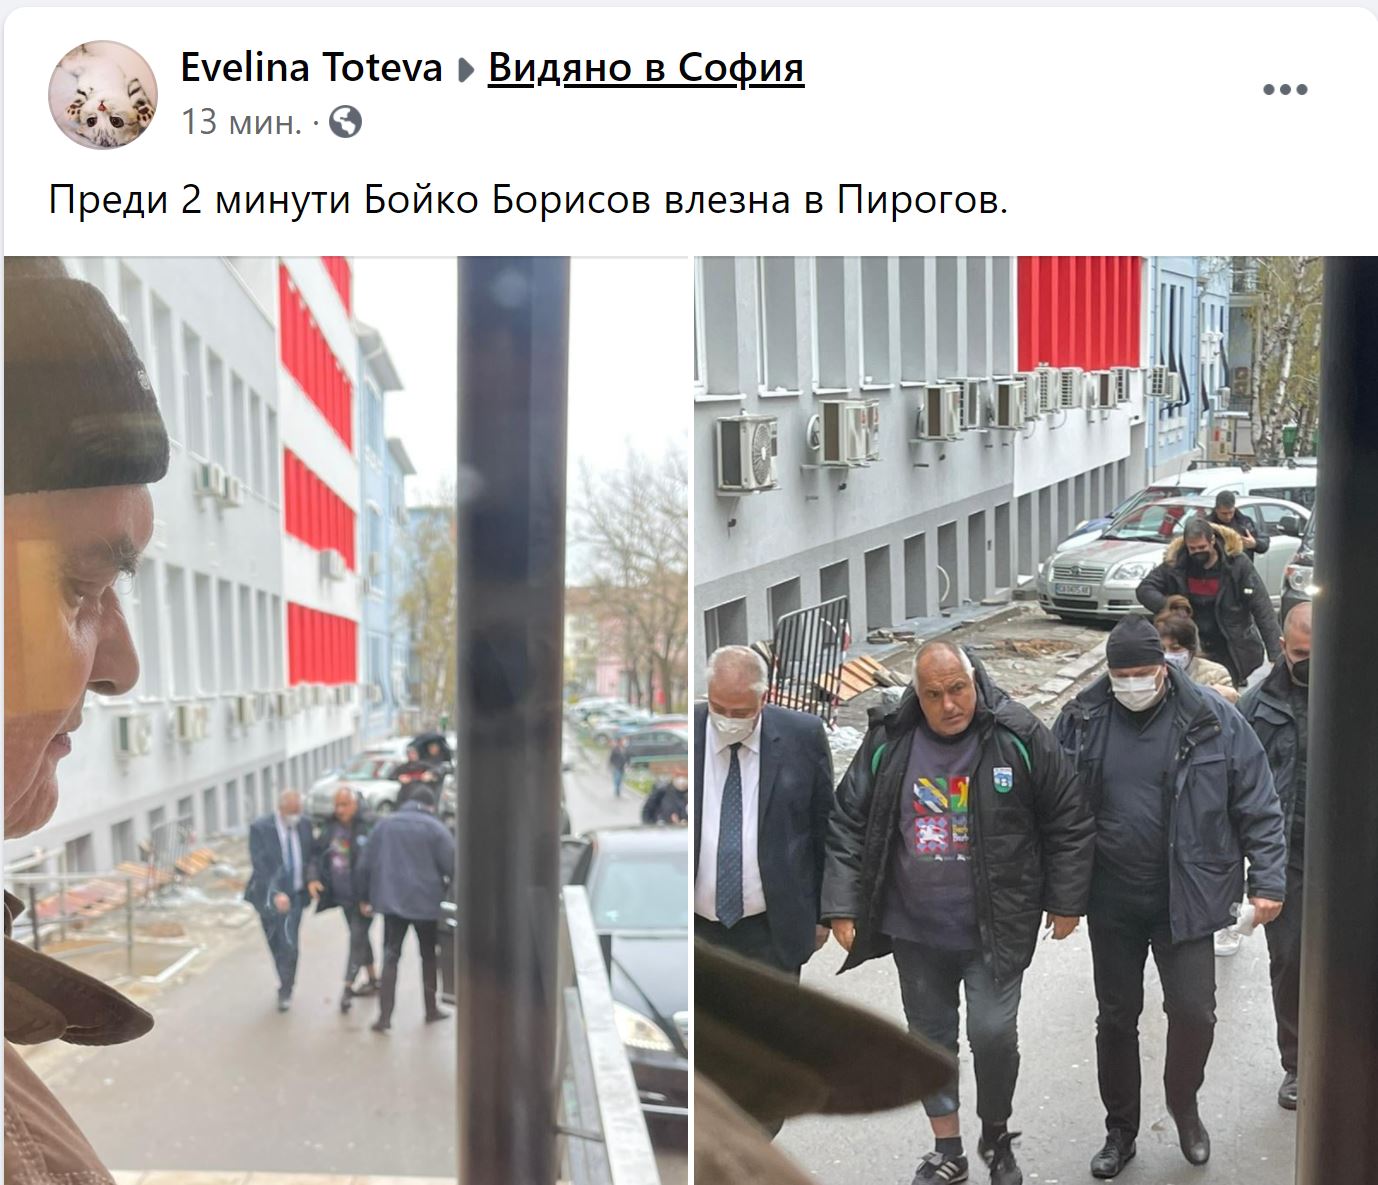 Борисов влезе в Пирогов